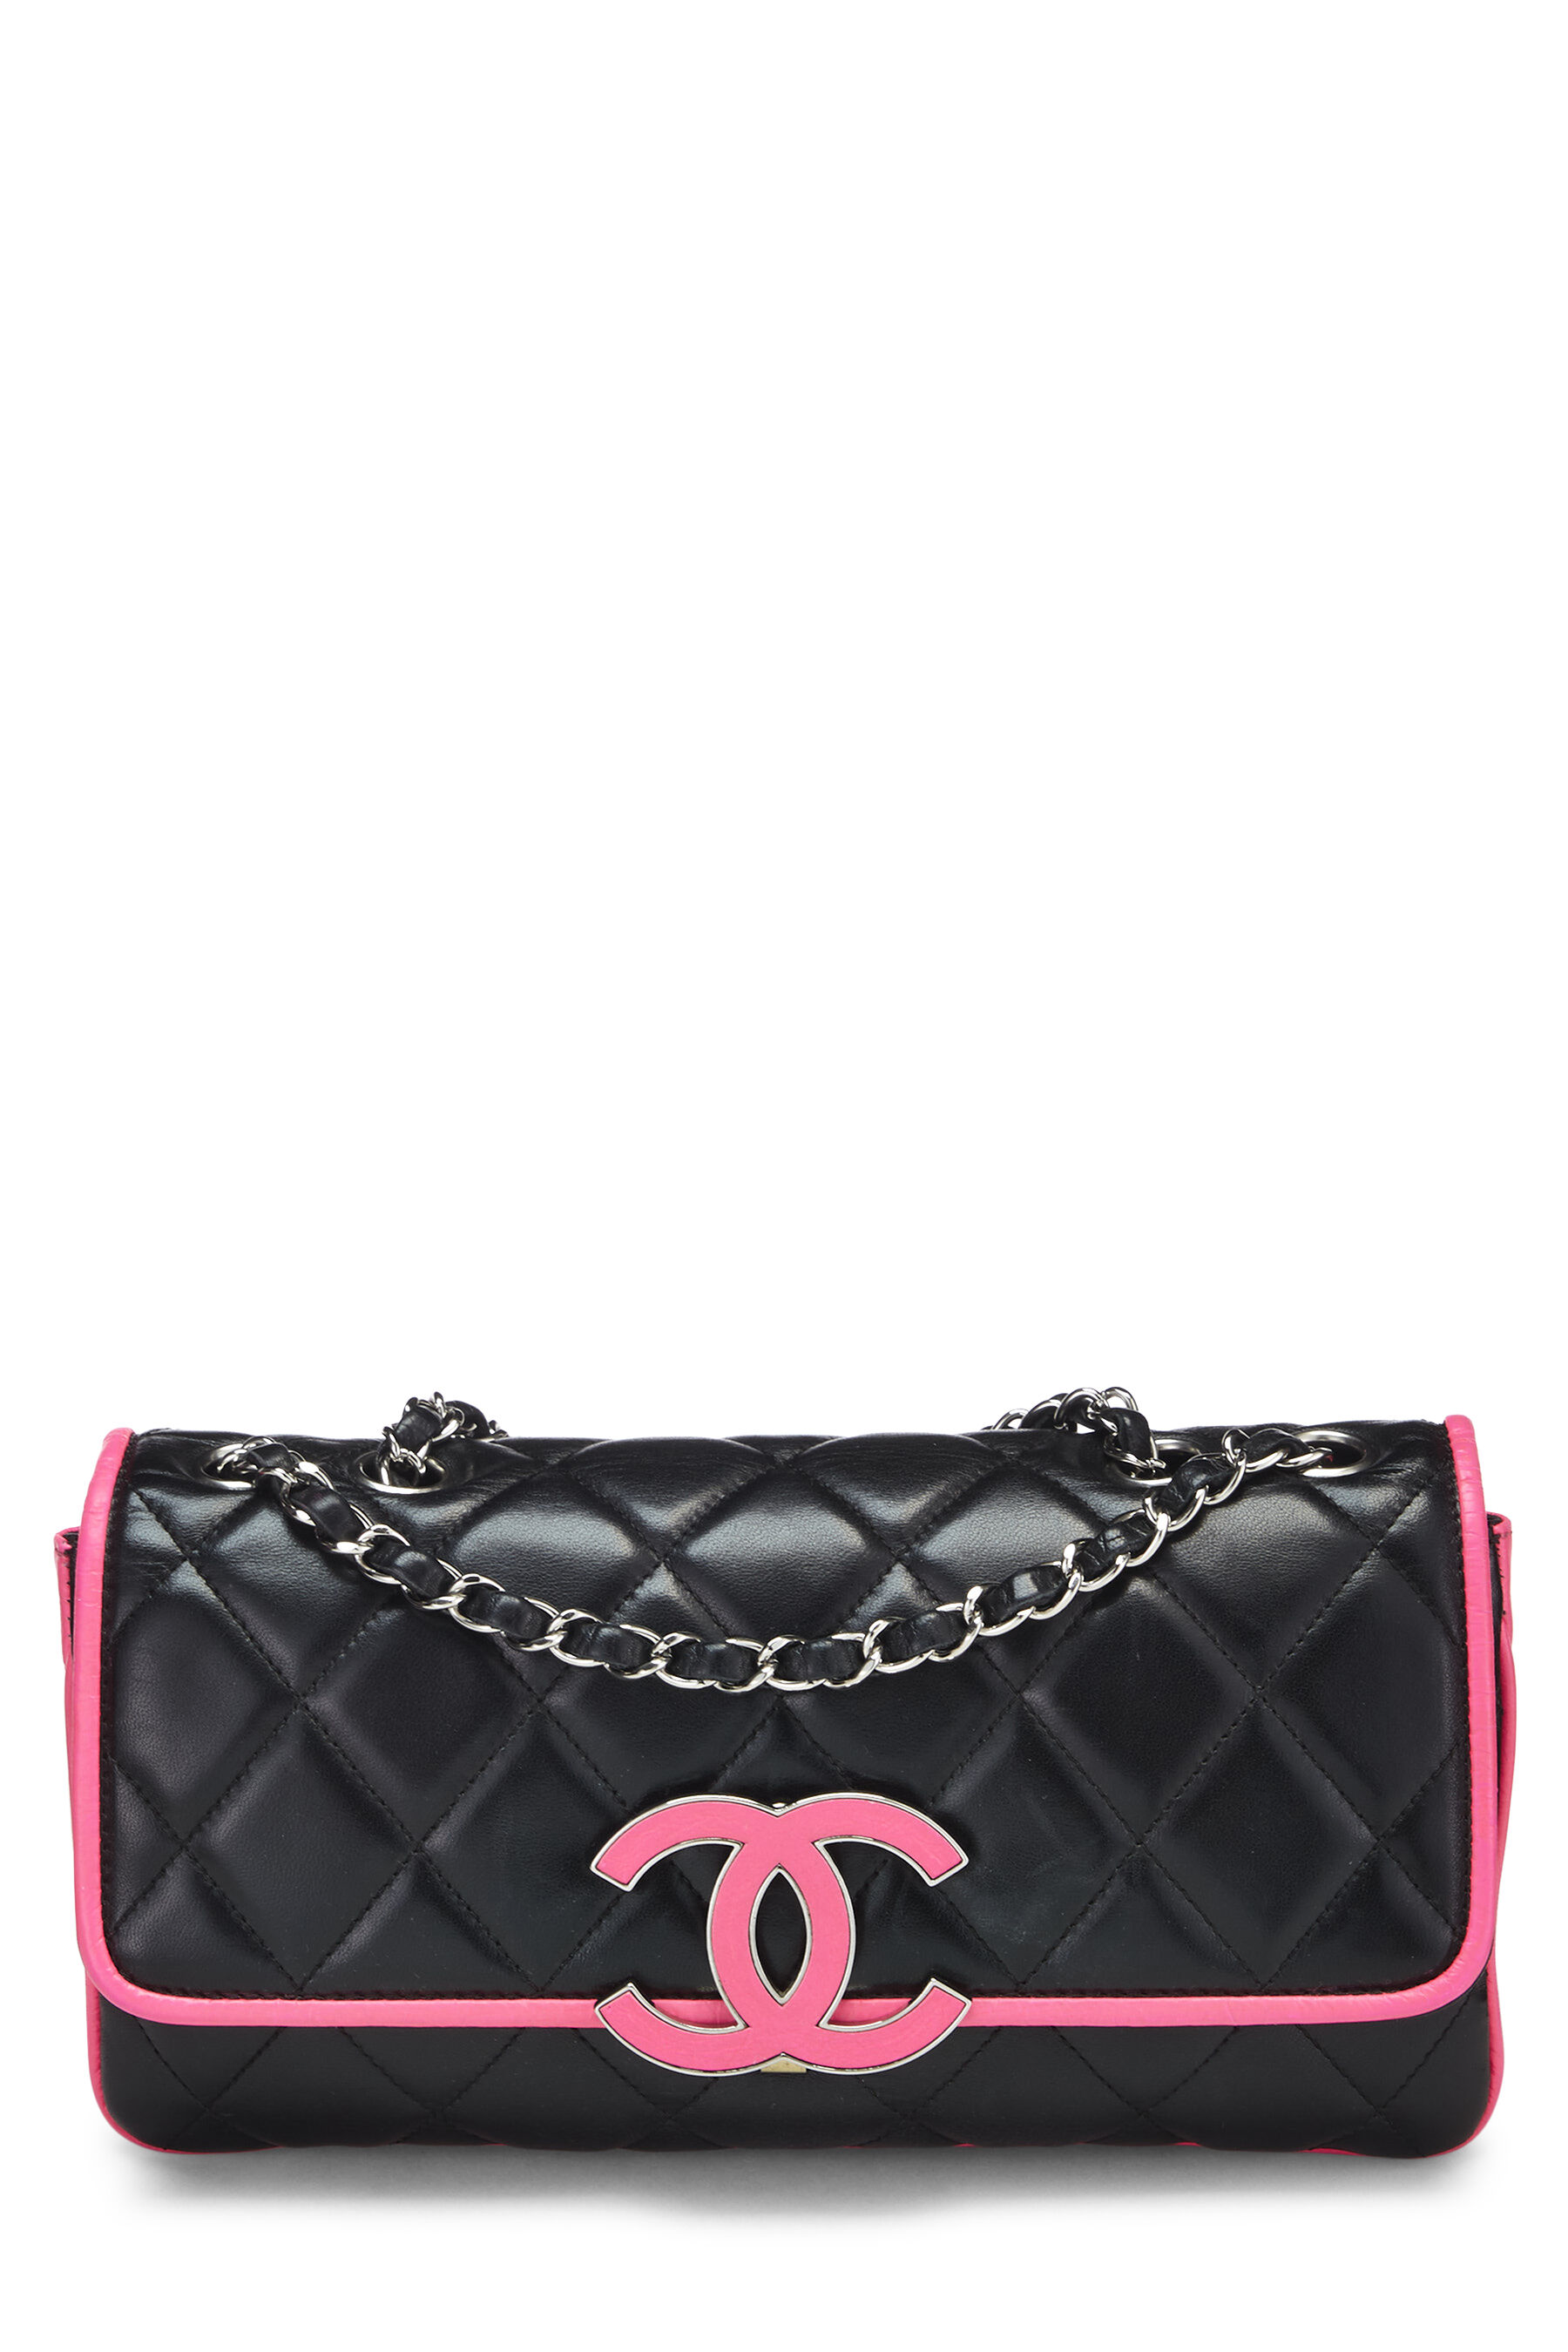 Chanel Divine Flap Bag